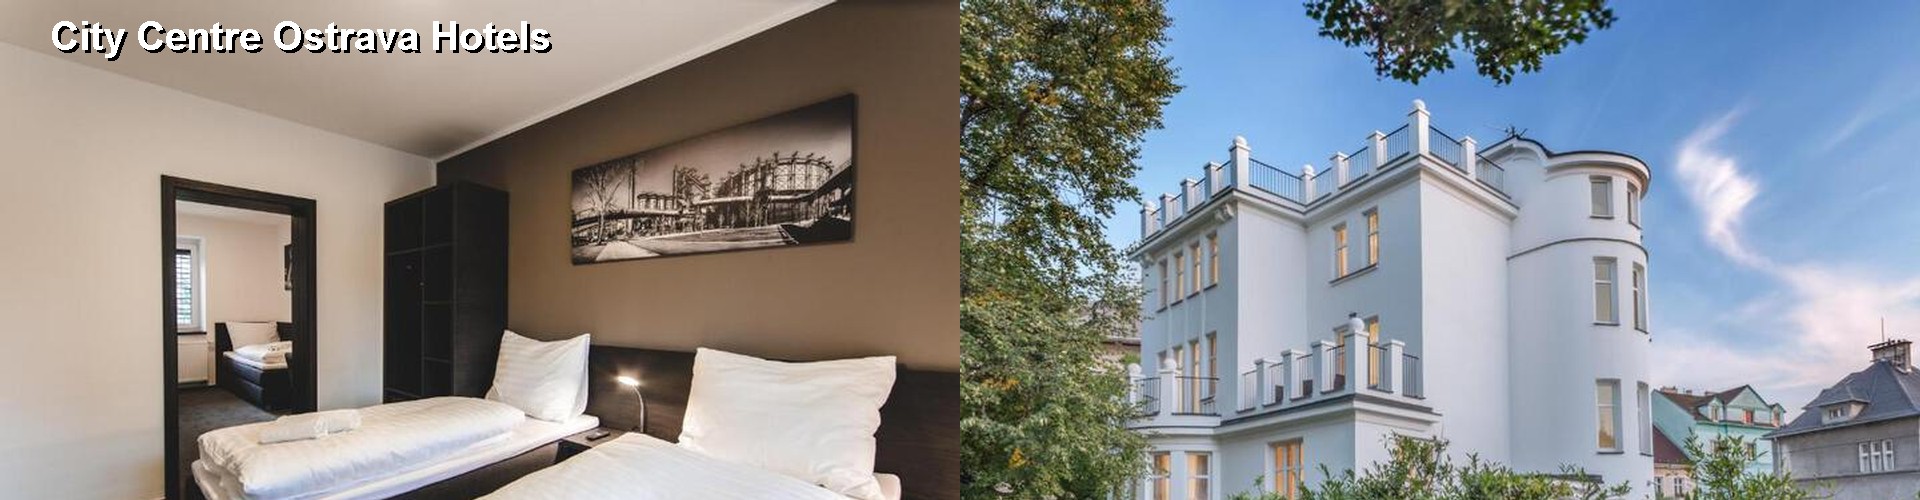 3 Best Hotels near City Centre Ostrava